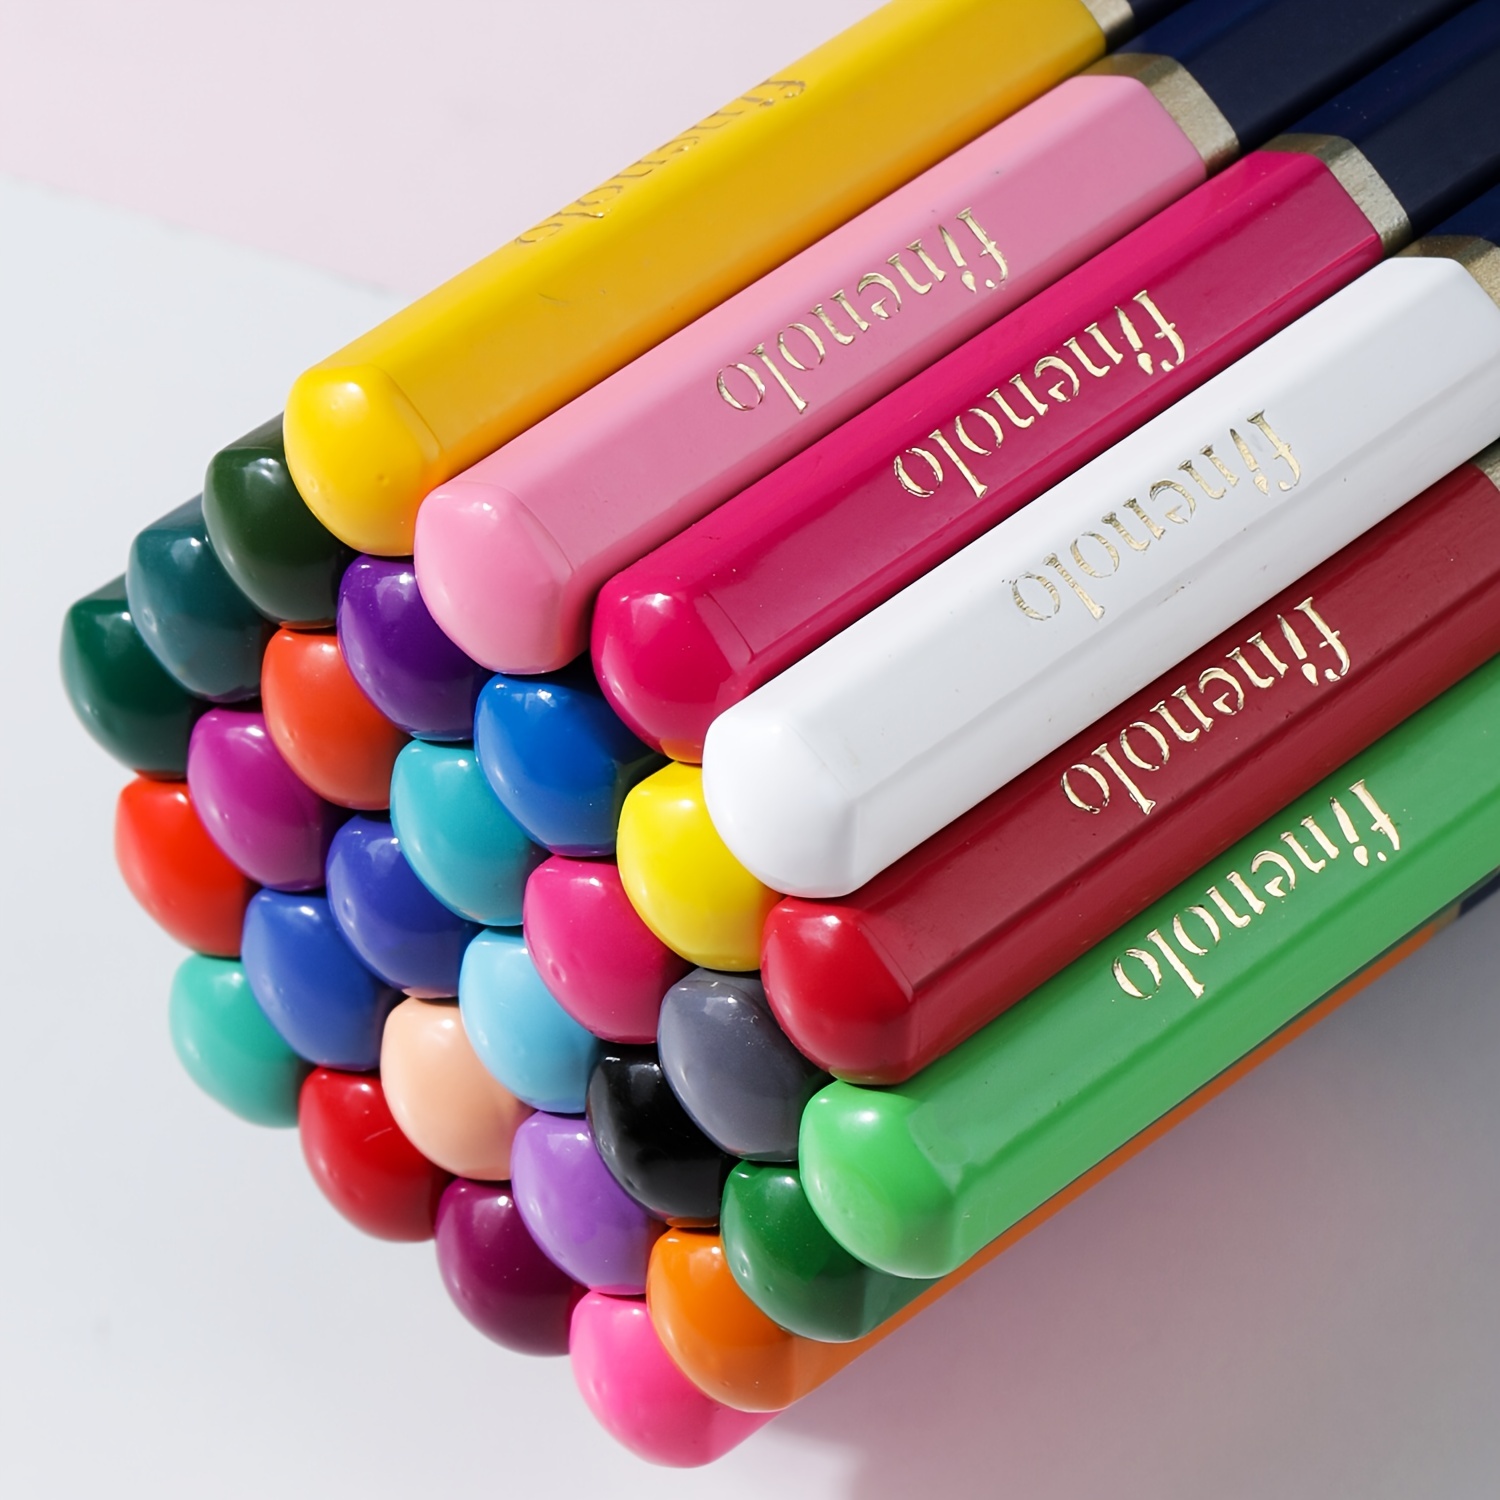 finenolo 72 Colored Pencils for Adult Coloring Books, Soft Core